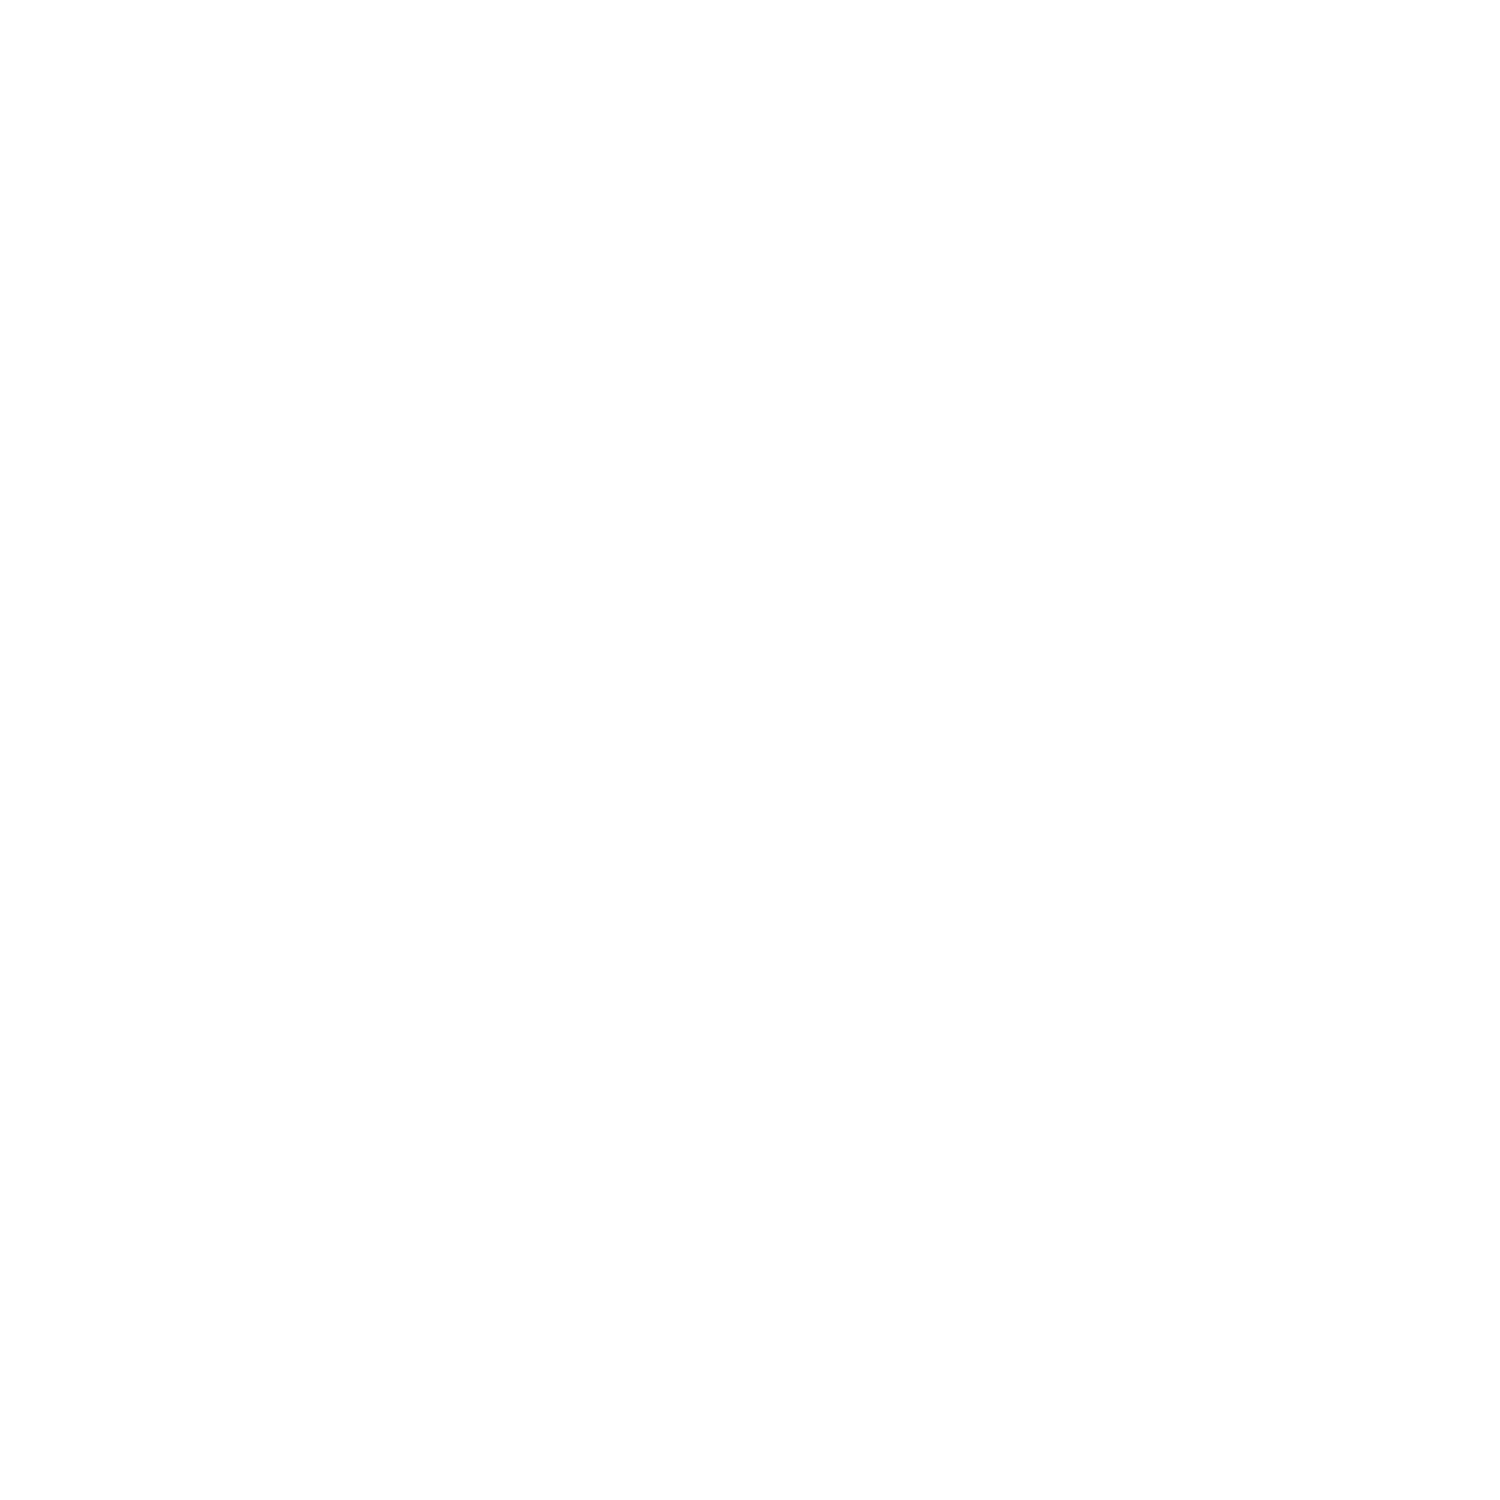 ATP Izosoluții